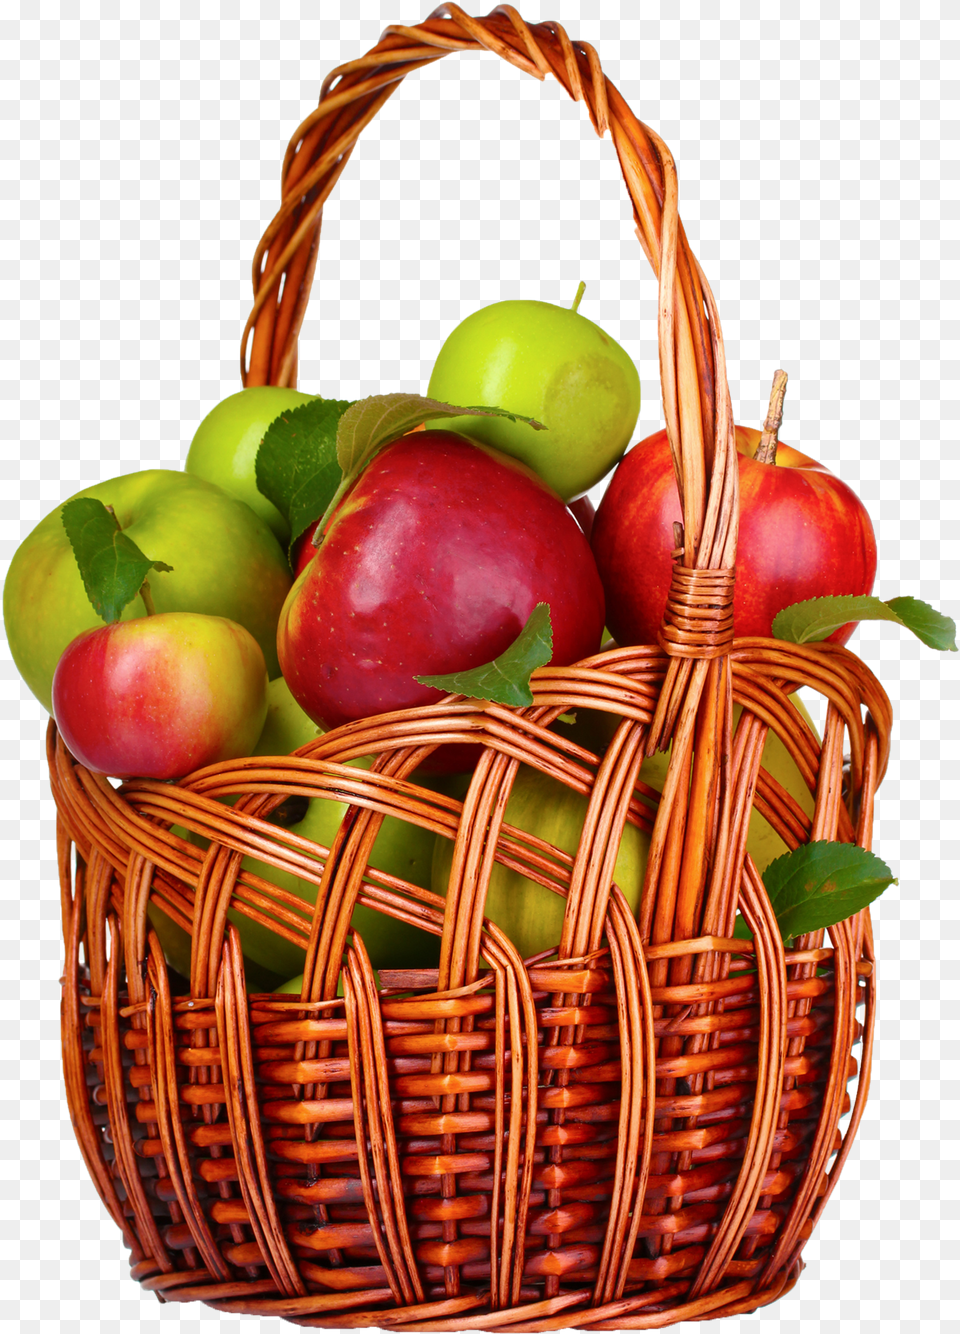 Apple Images Transparent Background Fruit Apple Basket, Food, Plant, Produce Free Png